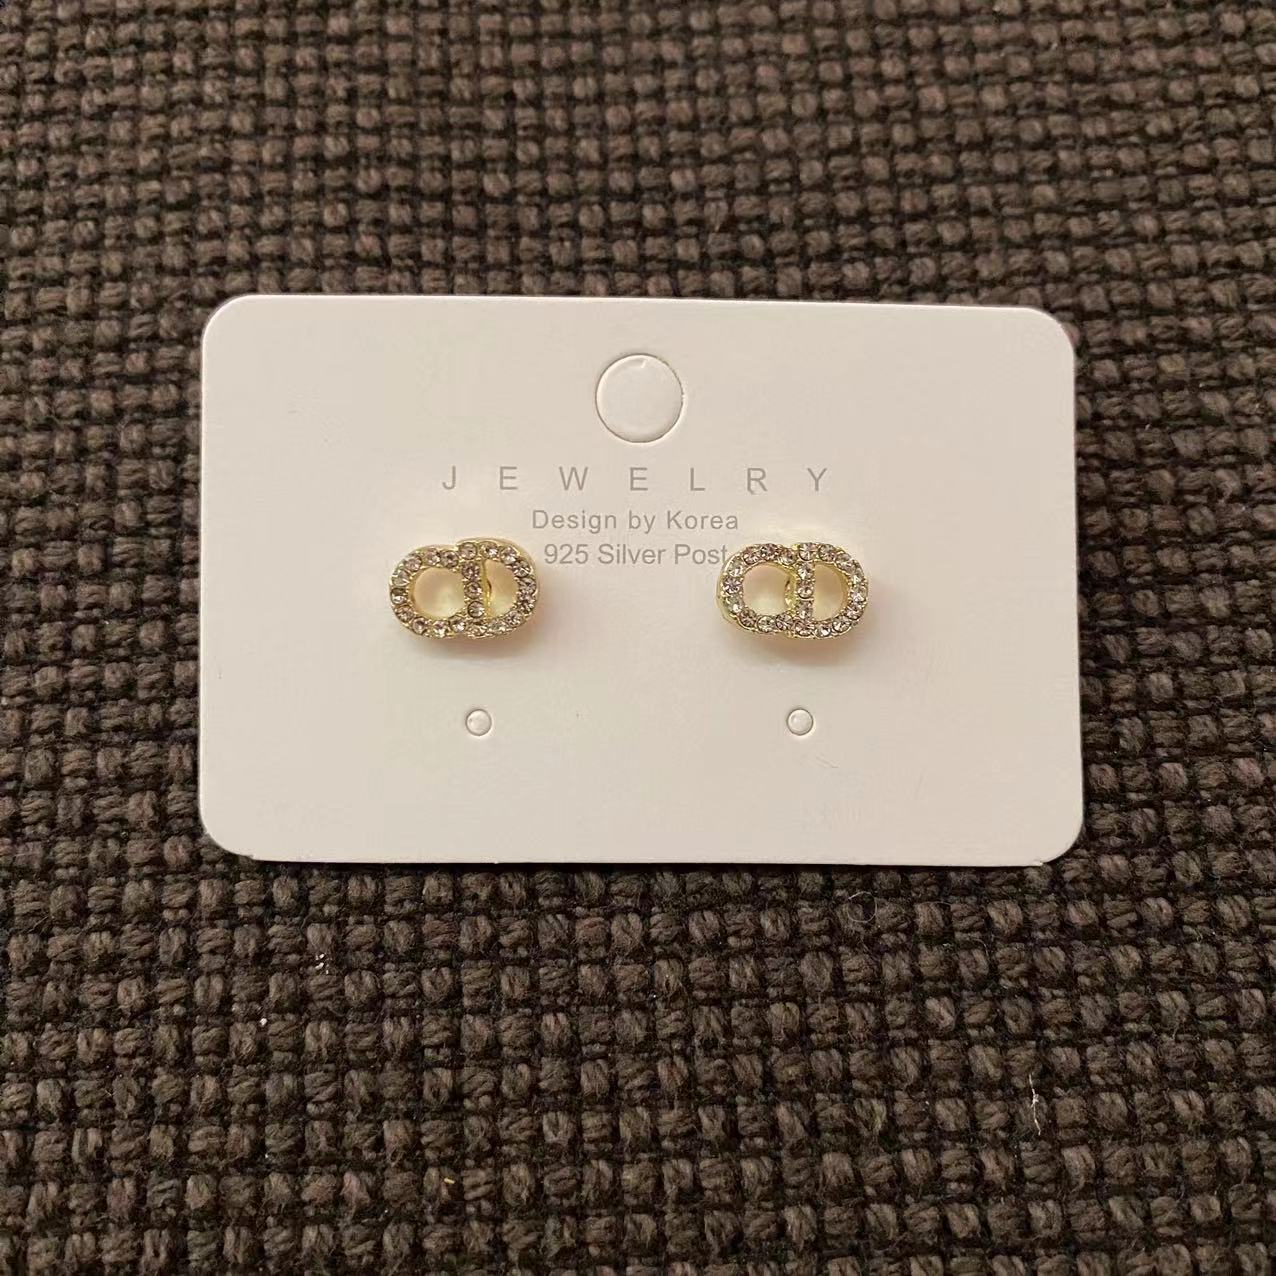 Big sale! New Dior CD earrings